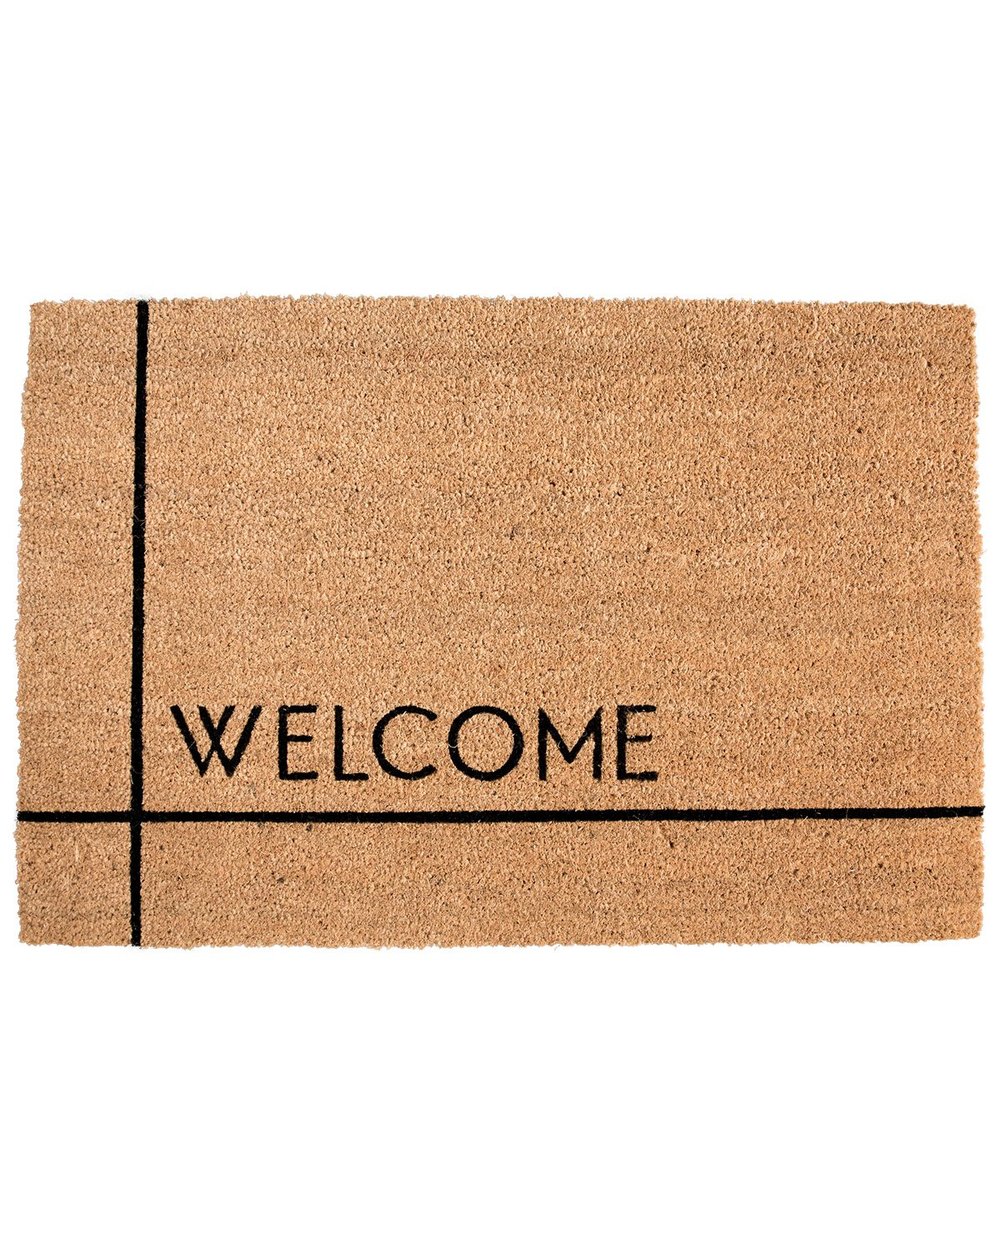 Welcome_Doormat_1.jpg